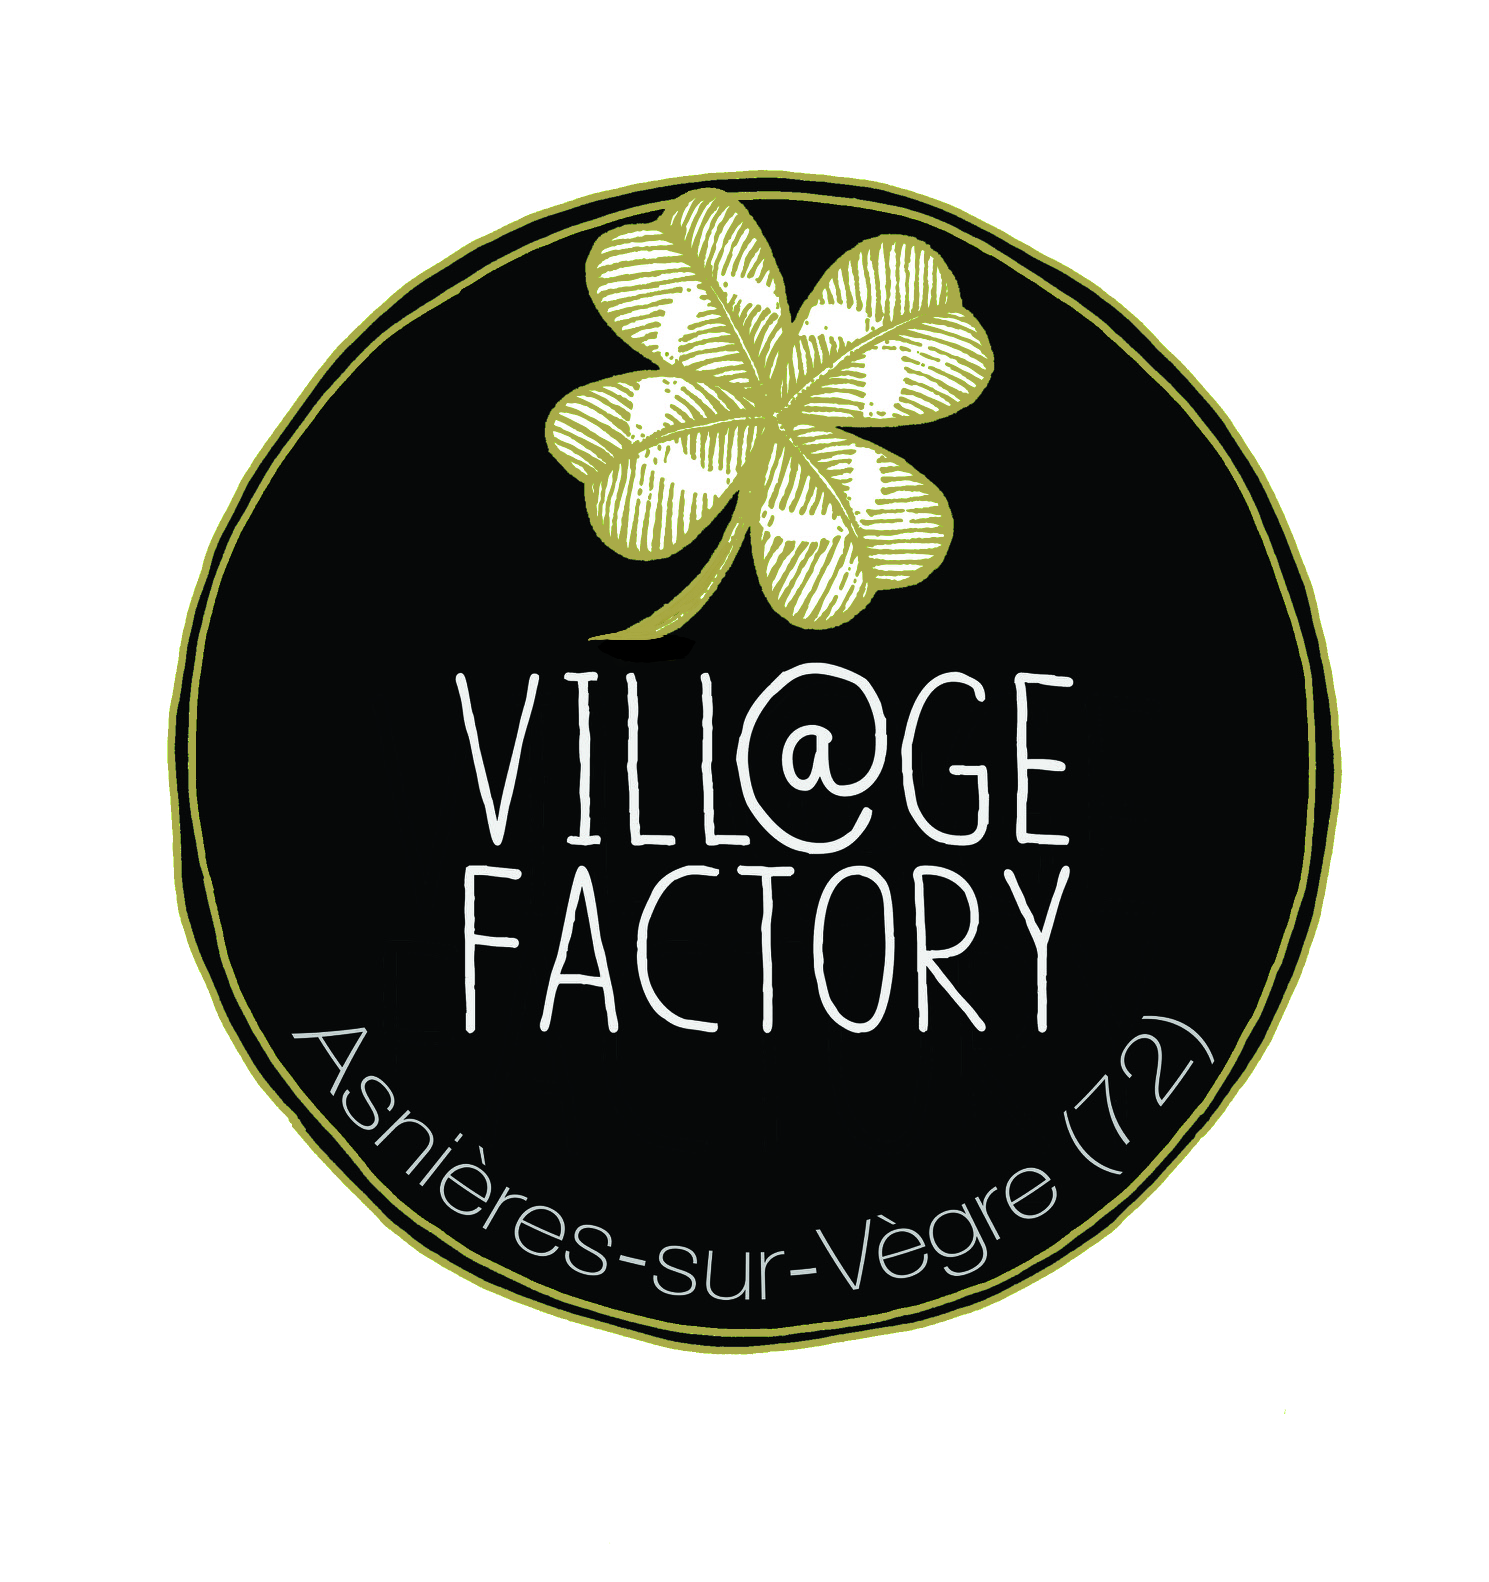 Asnières-sur-Vègre Village Factory